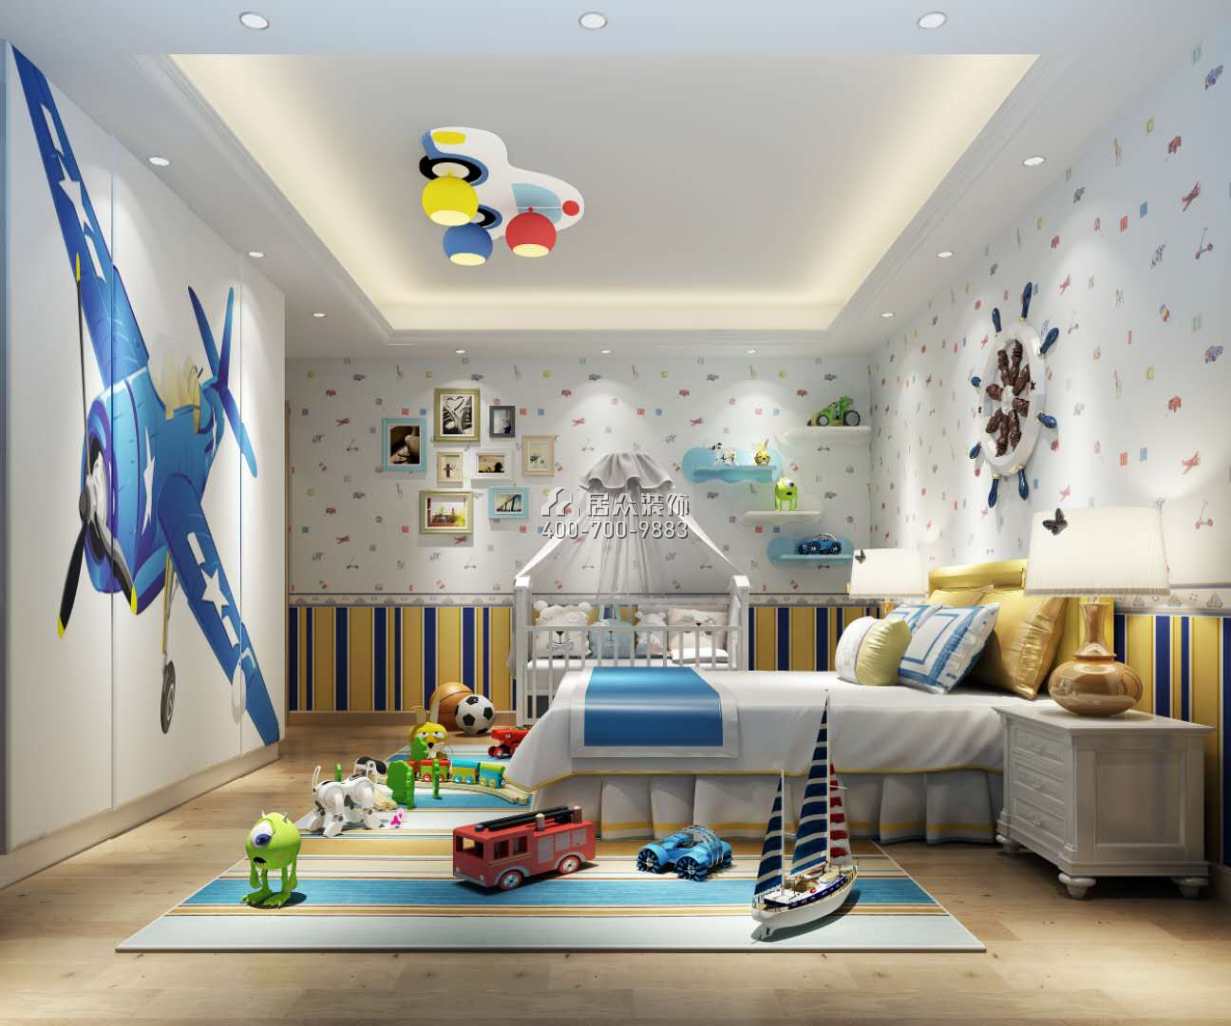 海逸豪庭尚都280平方米中式風格別墅戶型兒童房裝修效果圖